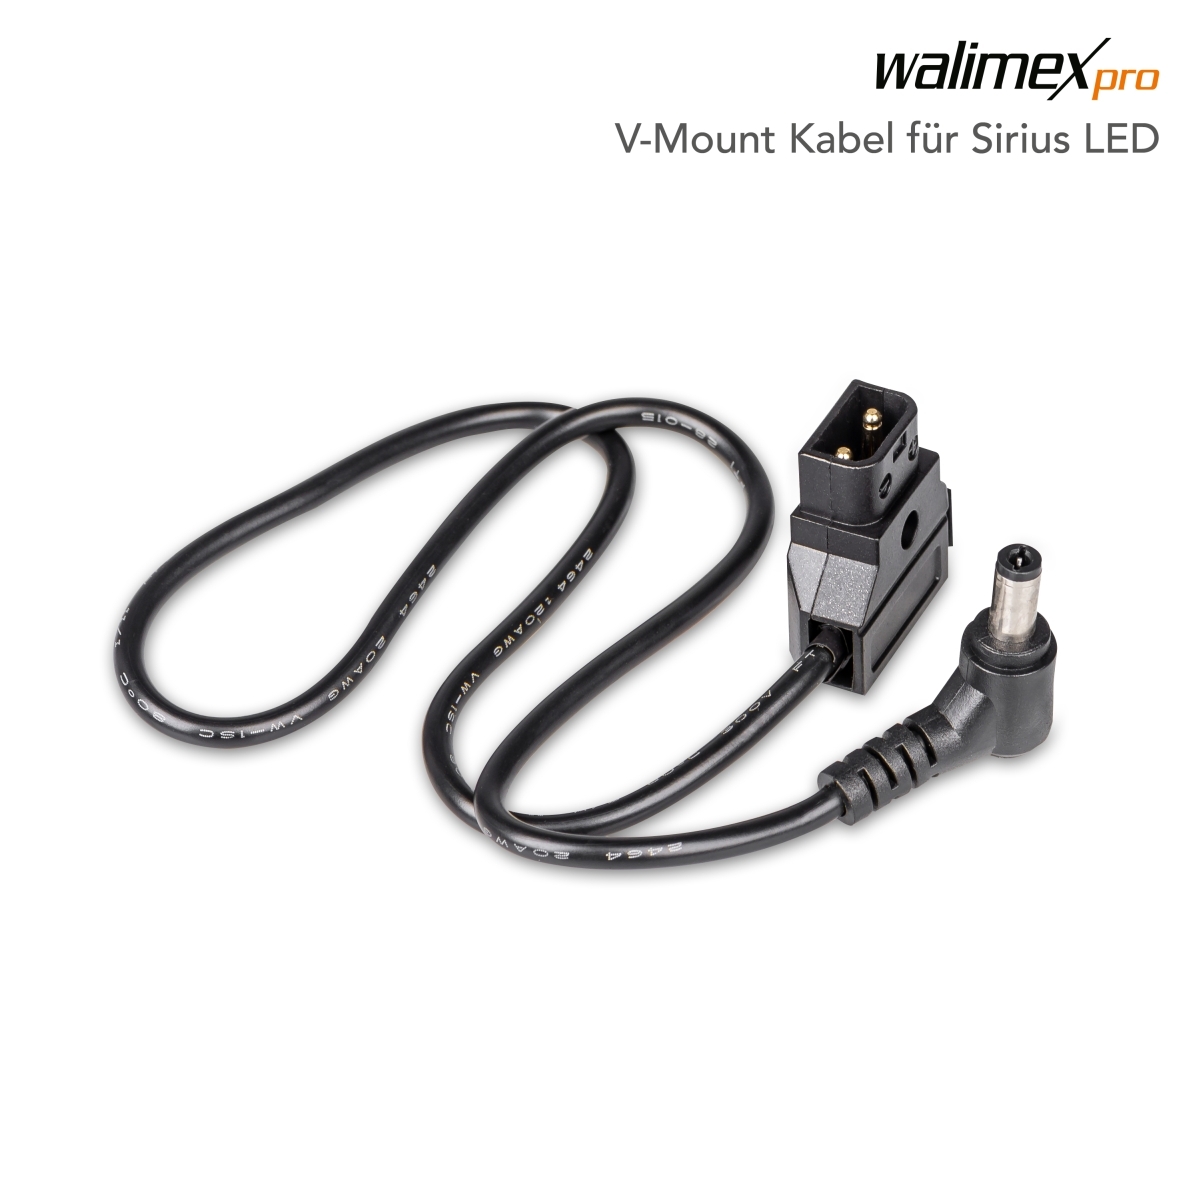 Walimex pro V-mount kabel voor Sirius